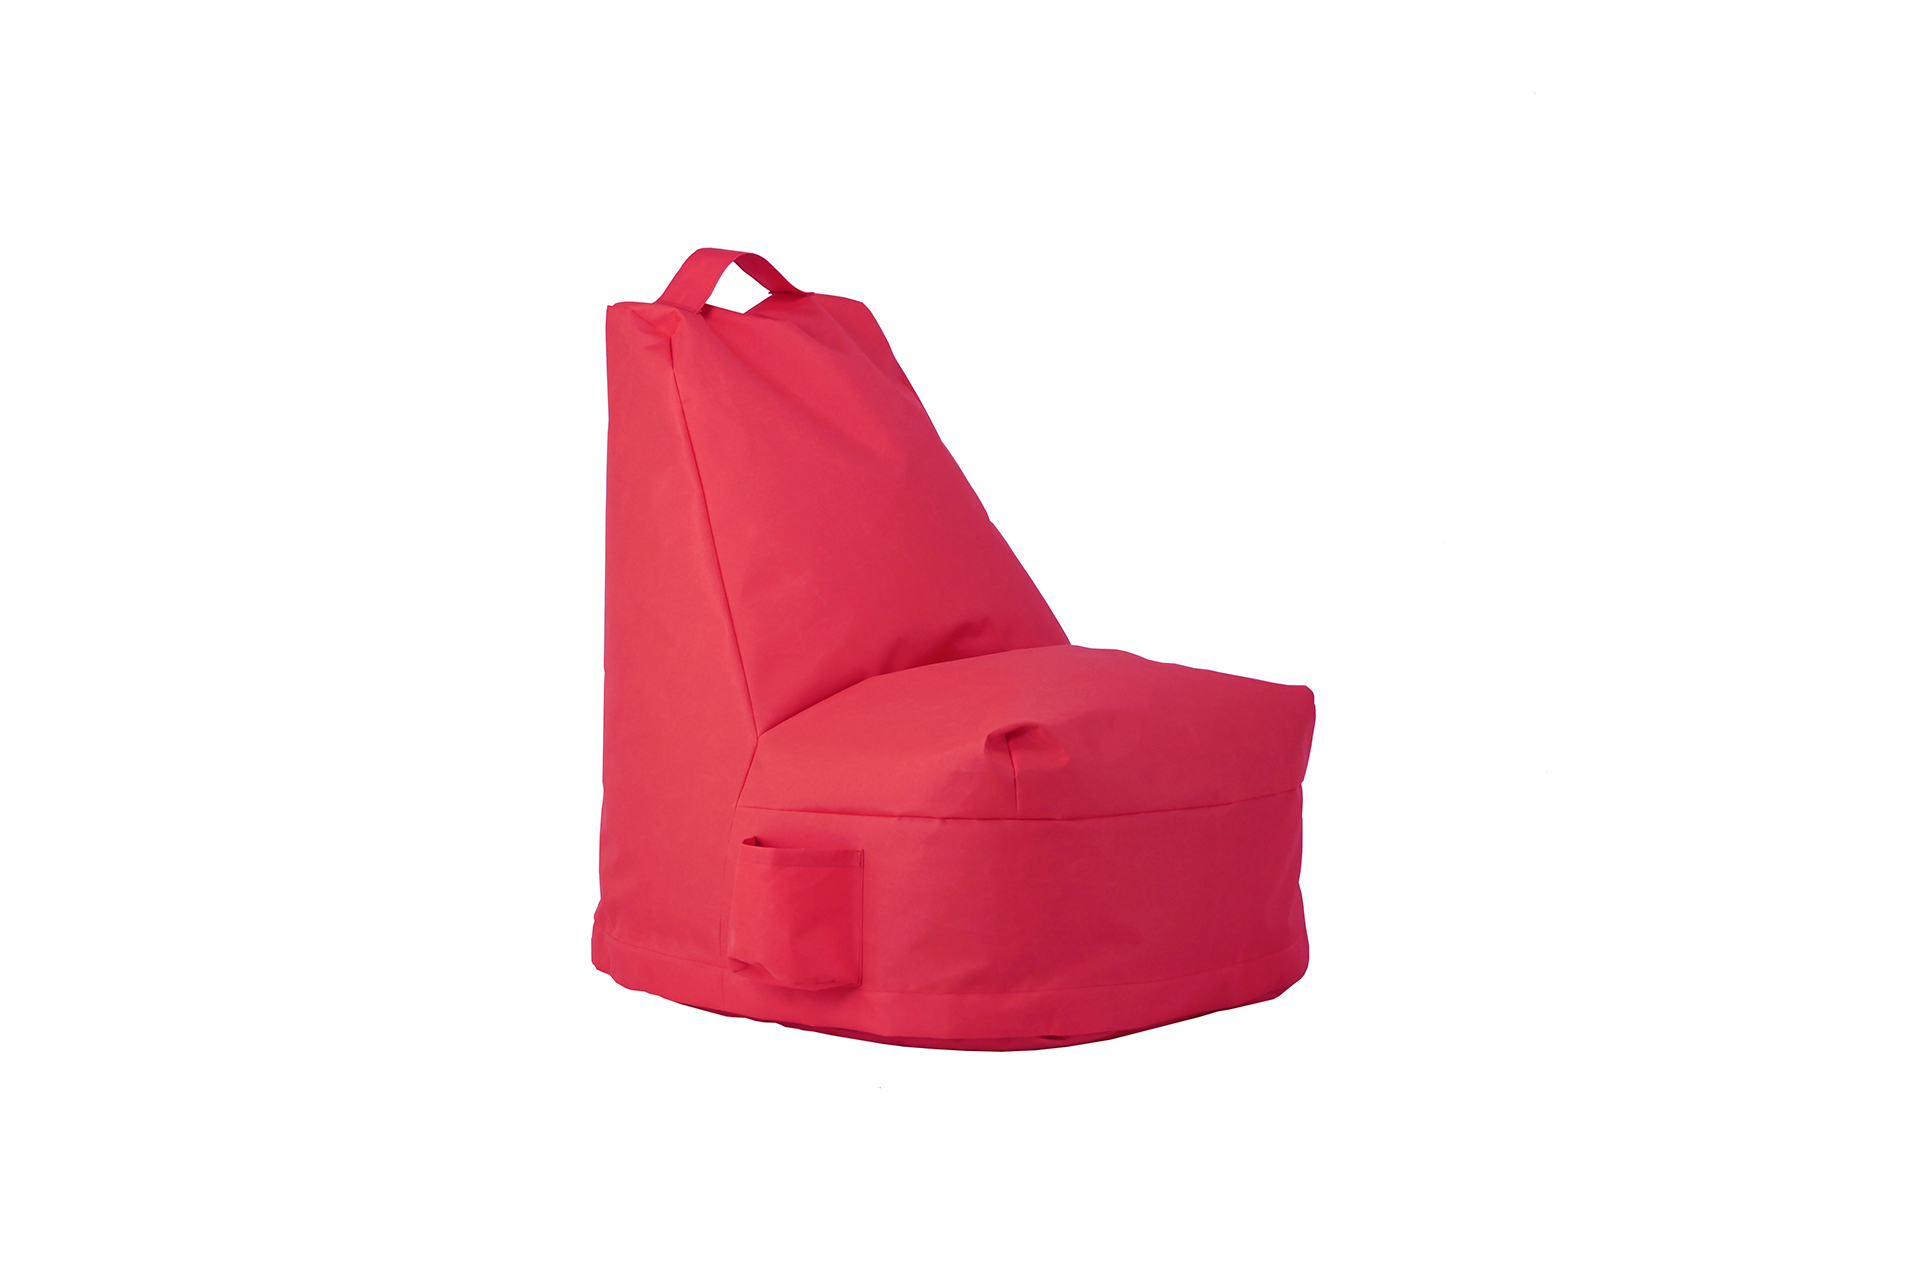 Pienessä L-tuolissa saa ryhdikkään asennon, sillä tuoli tukee istujan selkää ja jalkoja.